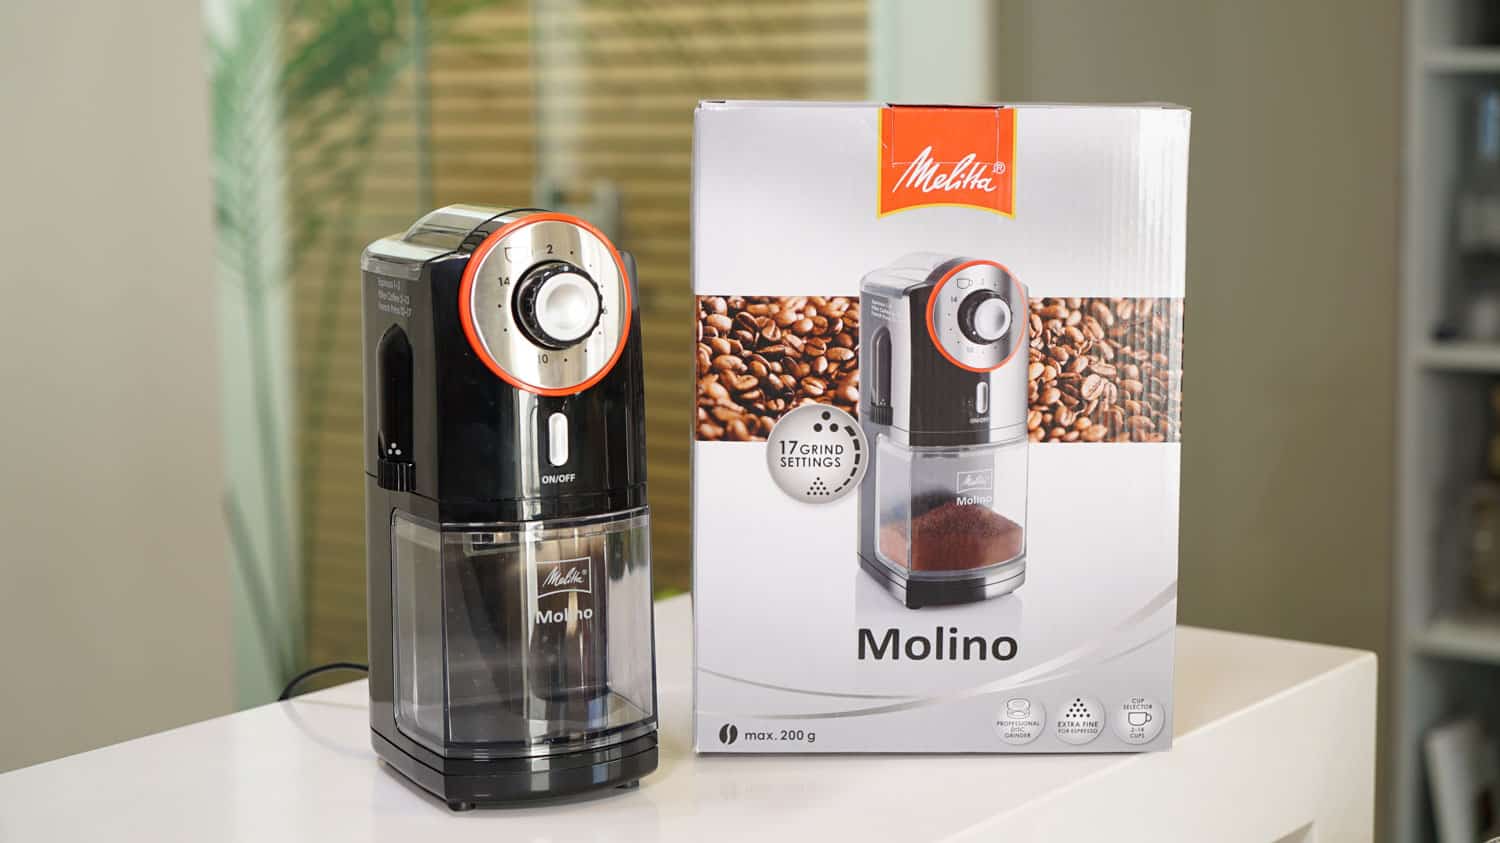 Delegatie knoop lichten Melitta Molino koffiemolen review » Vivakoffie